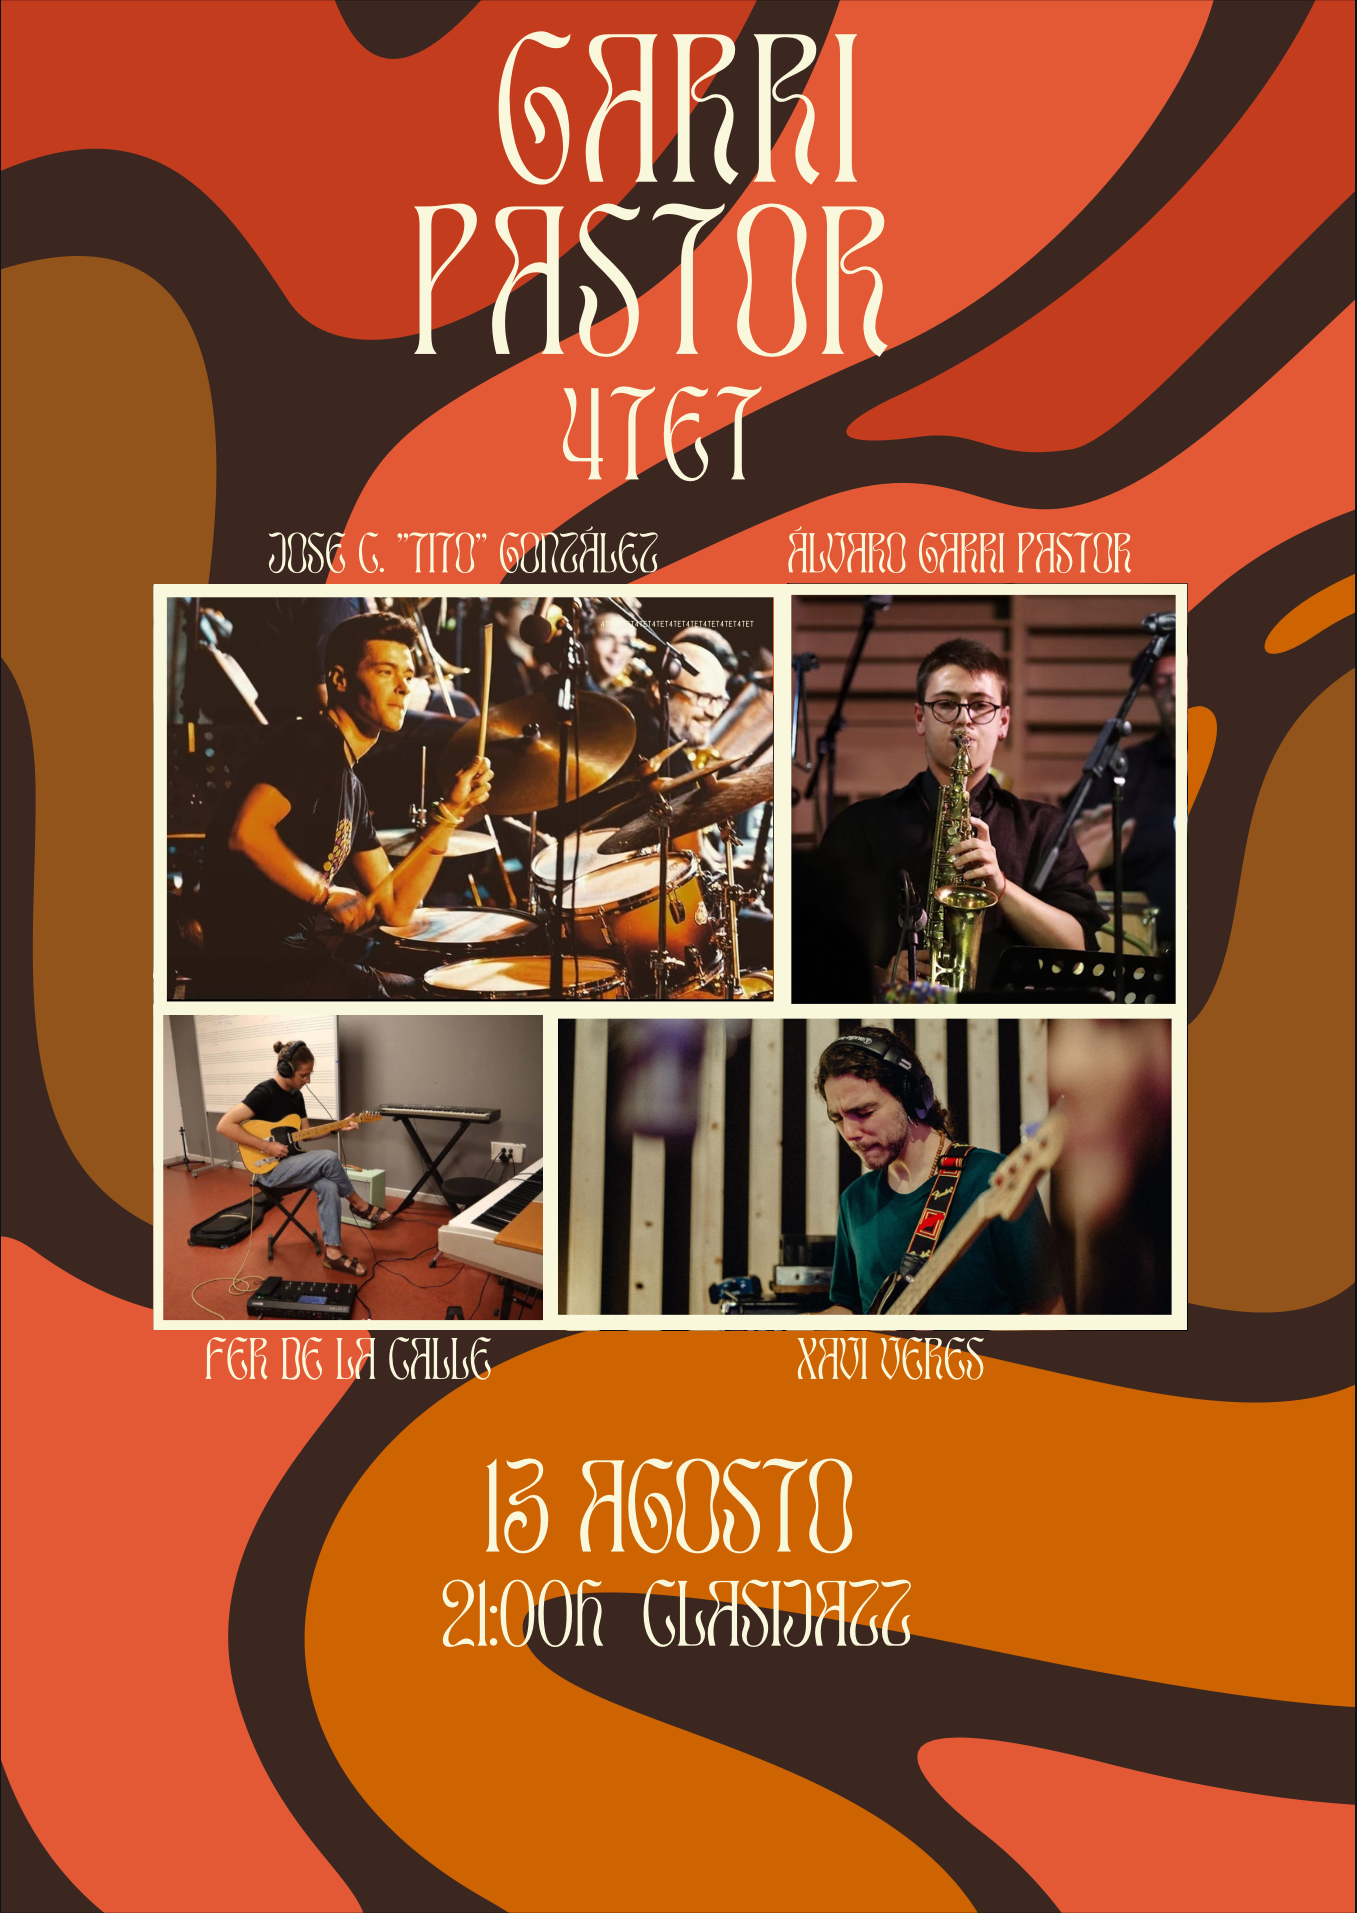 Garri Pastor Quartet-Evento musical en Almería